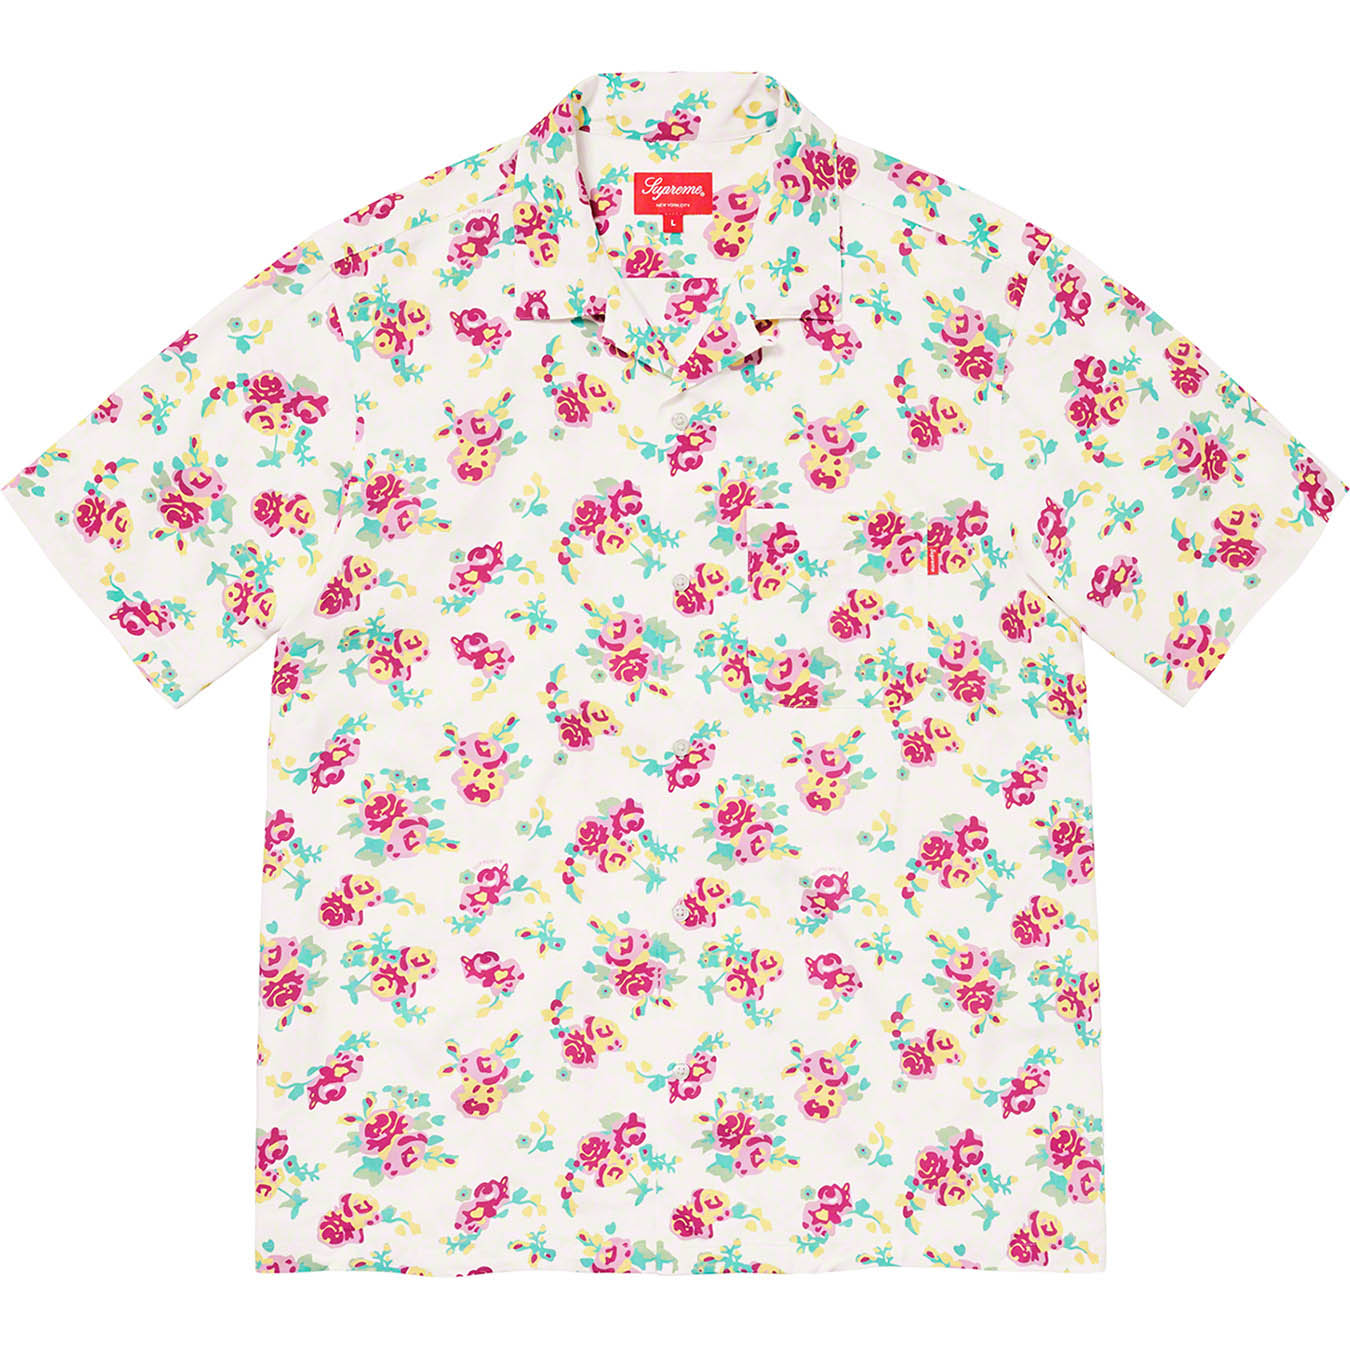 Supreme Floral Rayon S/S Shirt